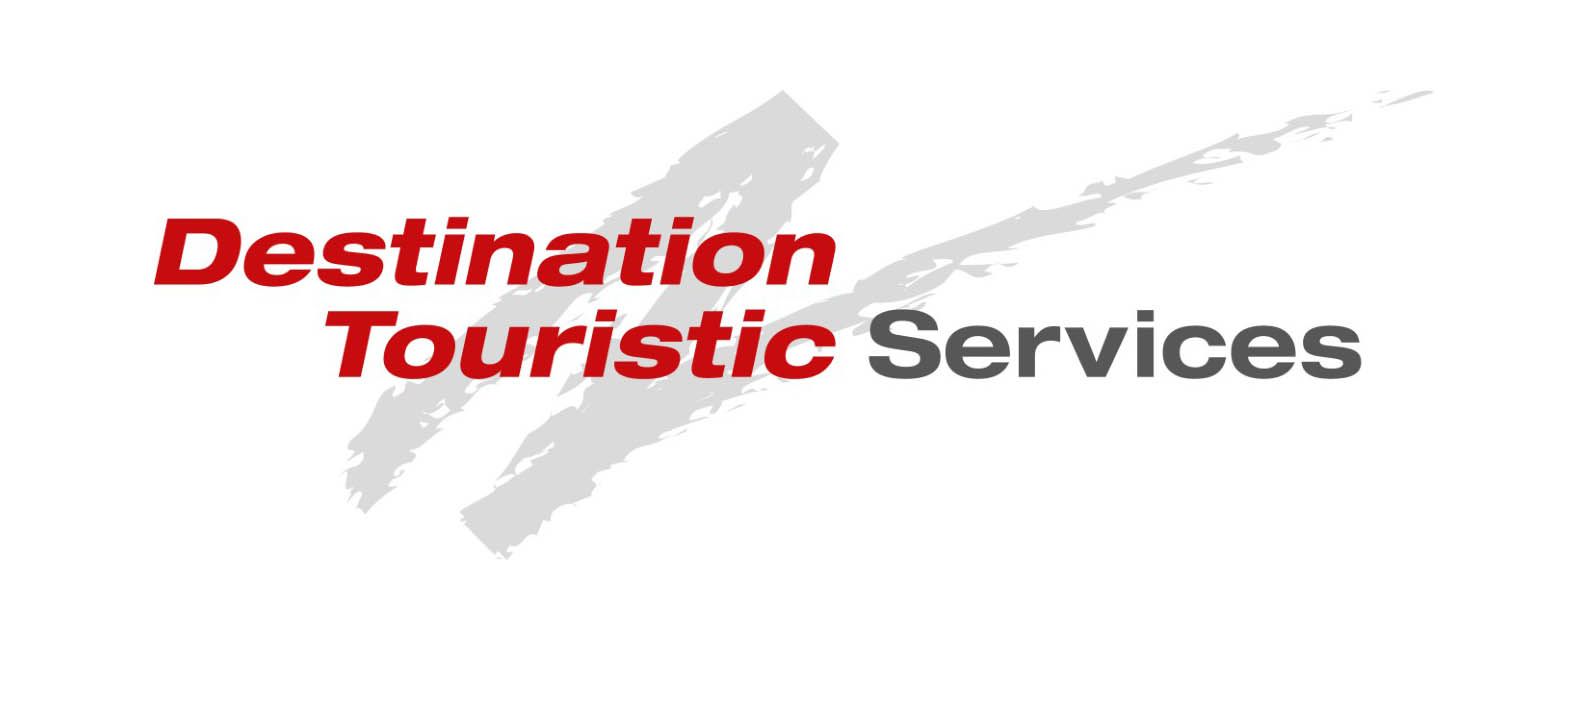 Η DESTINATION TOURISTIC SERVICES, μέλος του ομίλου της DER TOURISTIK,  επιθυμεί να προσλάβει υπάλληλο γραφείου στο υποκατάστημα της Κω